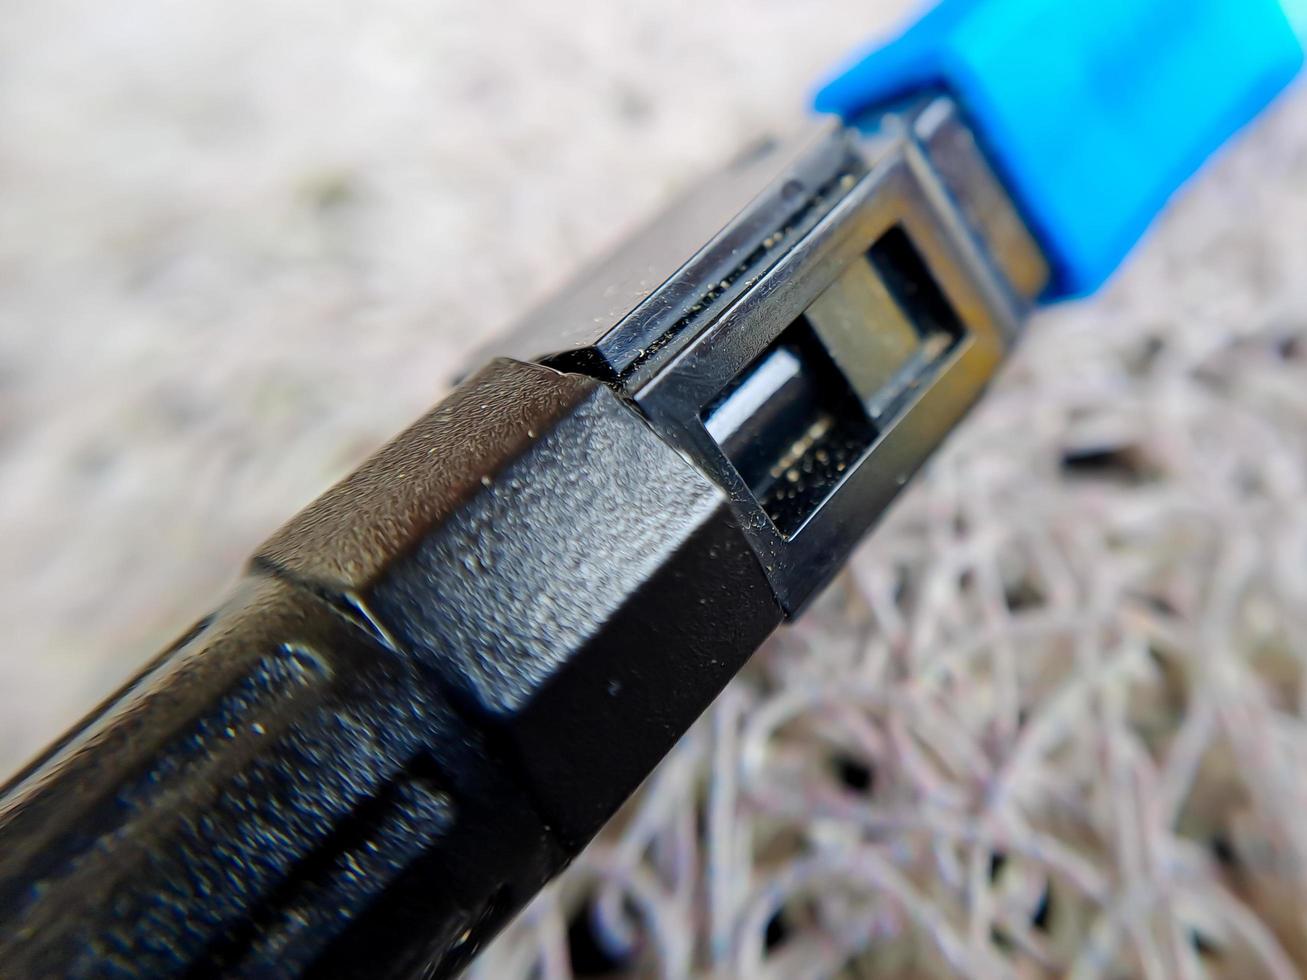 ein gebrauchtes blaues WLAN-Kabel, das nicht mehr verwendet wird, weil es kaputt ist foto